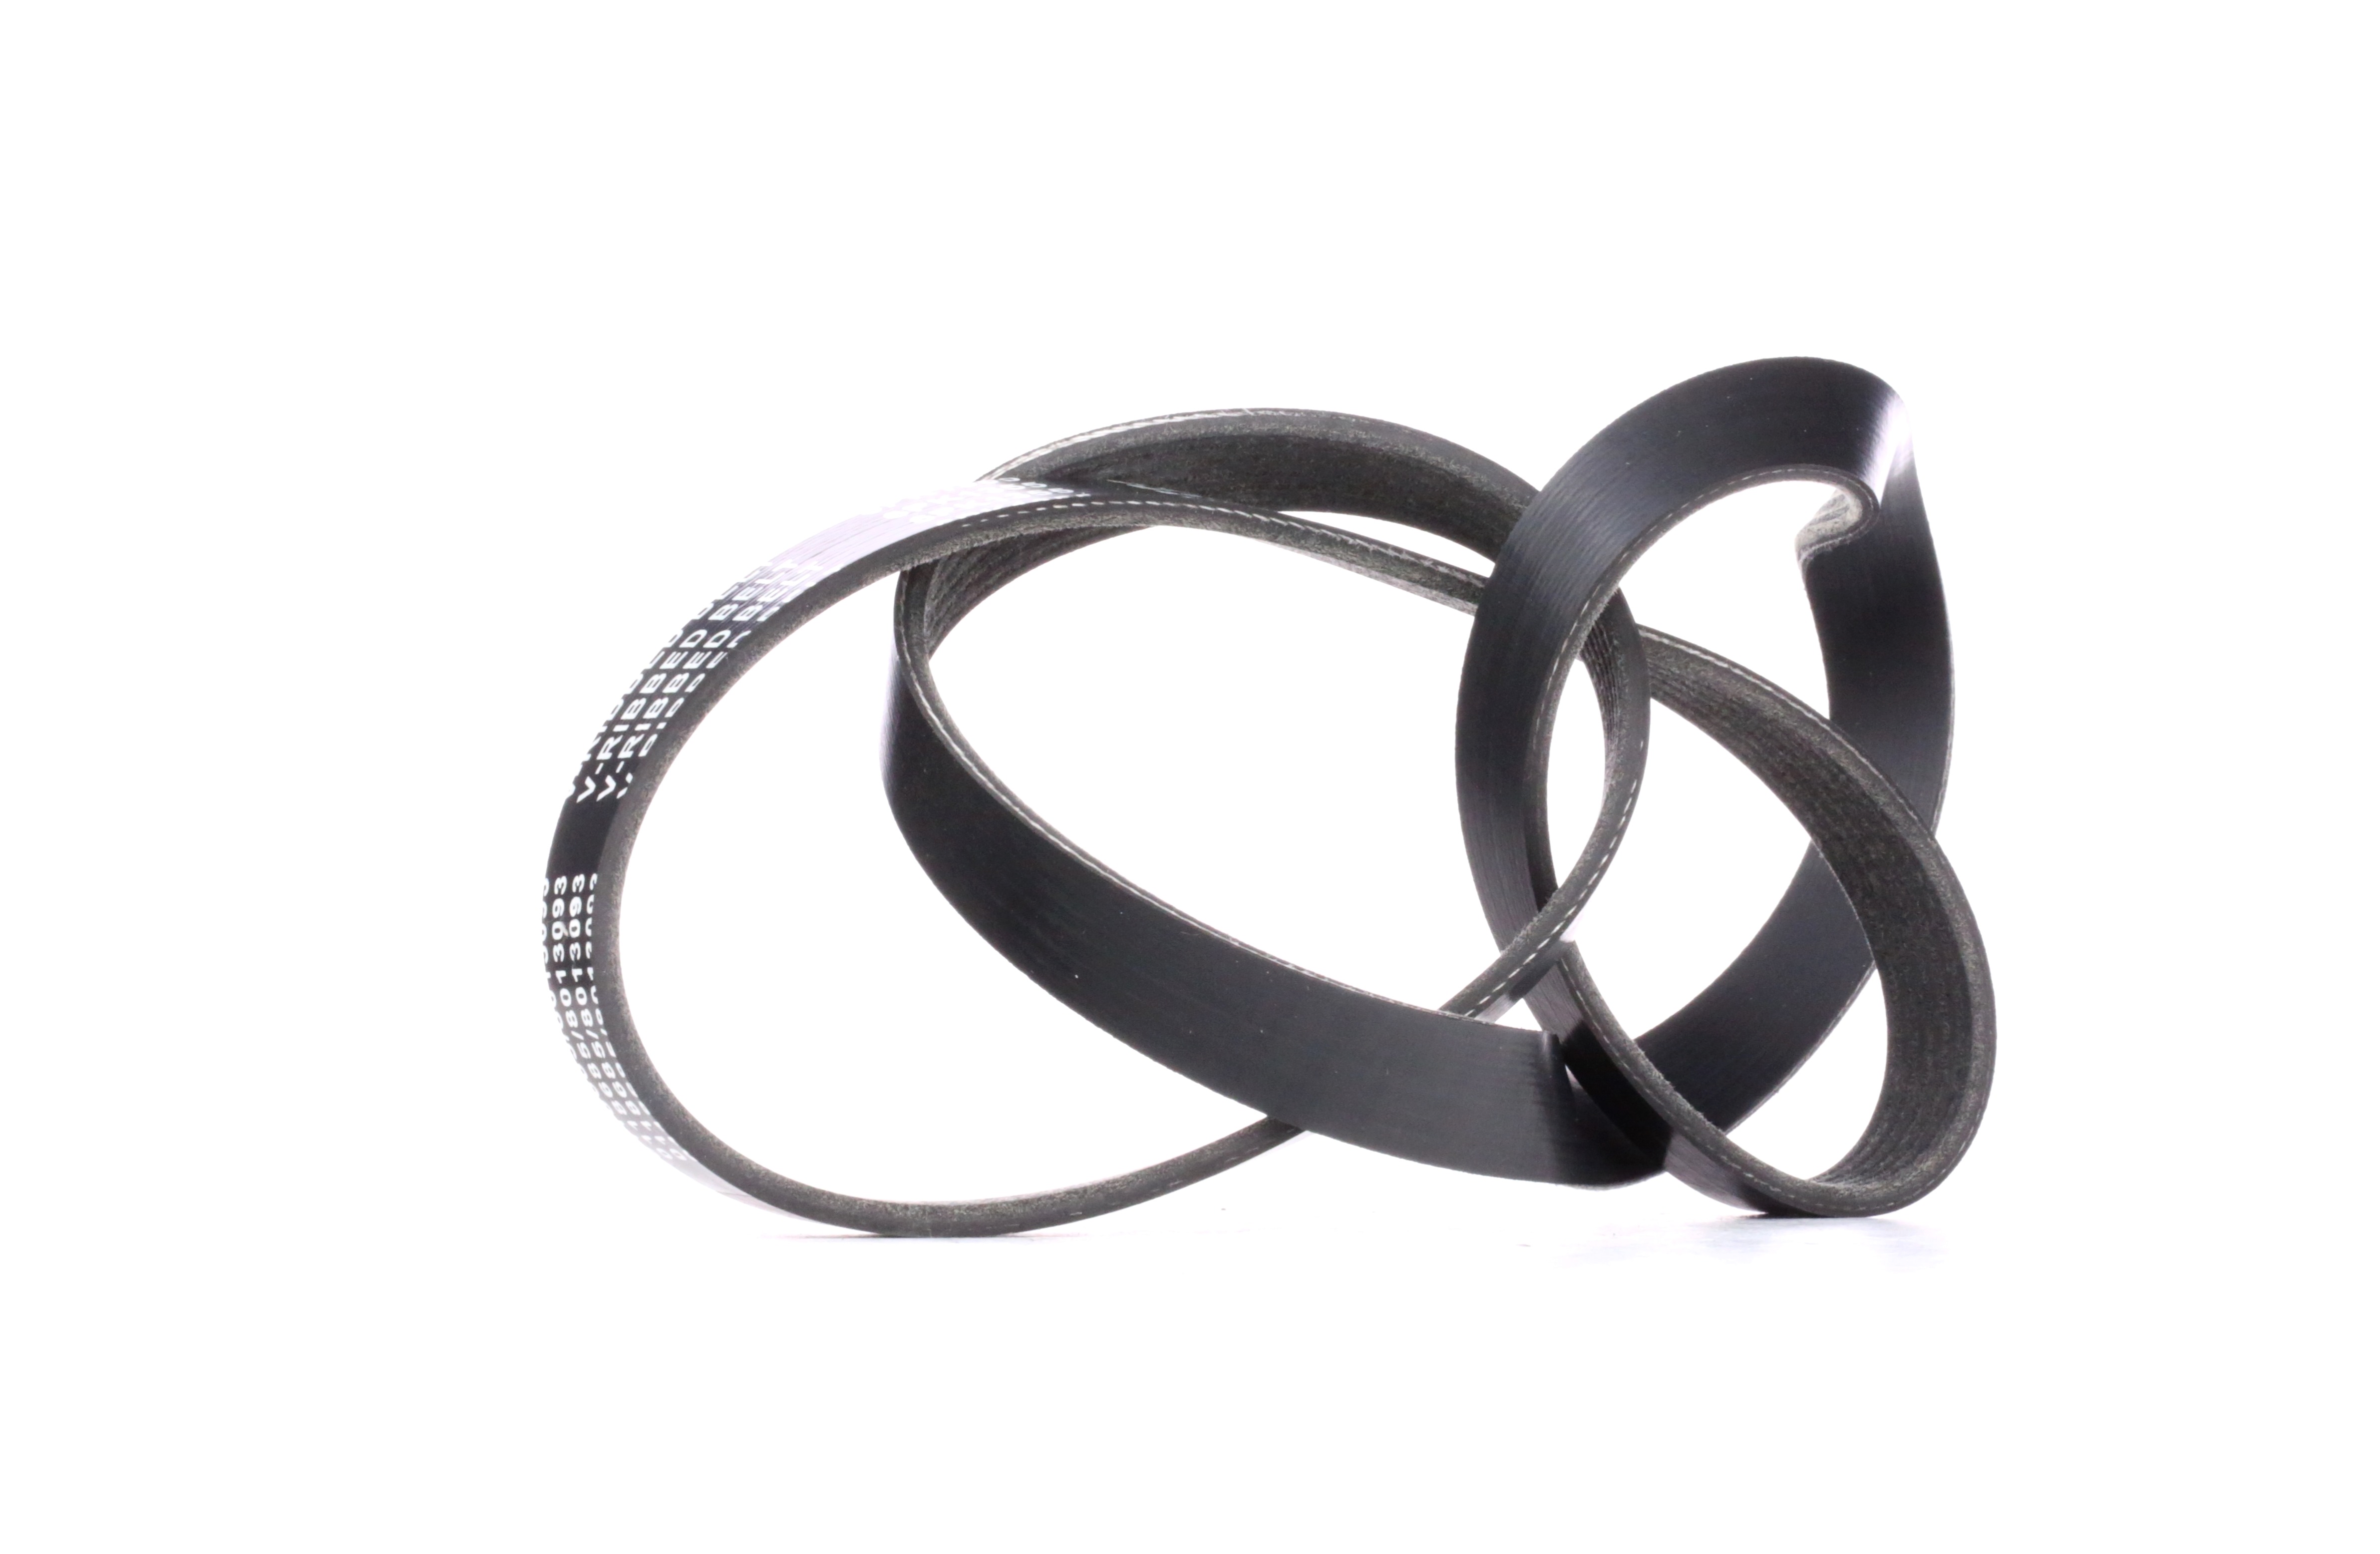 STARK SKPB-0090061 Serpentine belt 1353mm, 6, Polyester, EPDM (ethylene propylene diene Monomer (M-class) rubber)